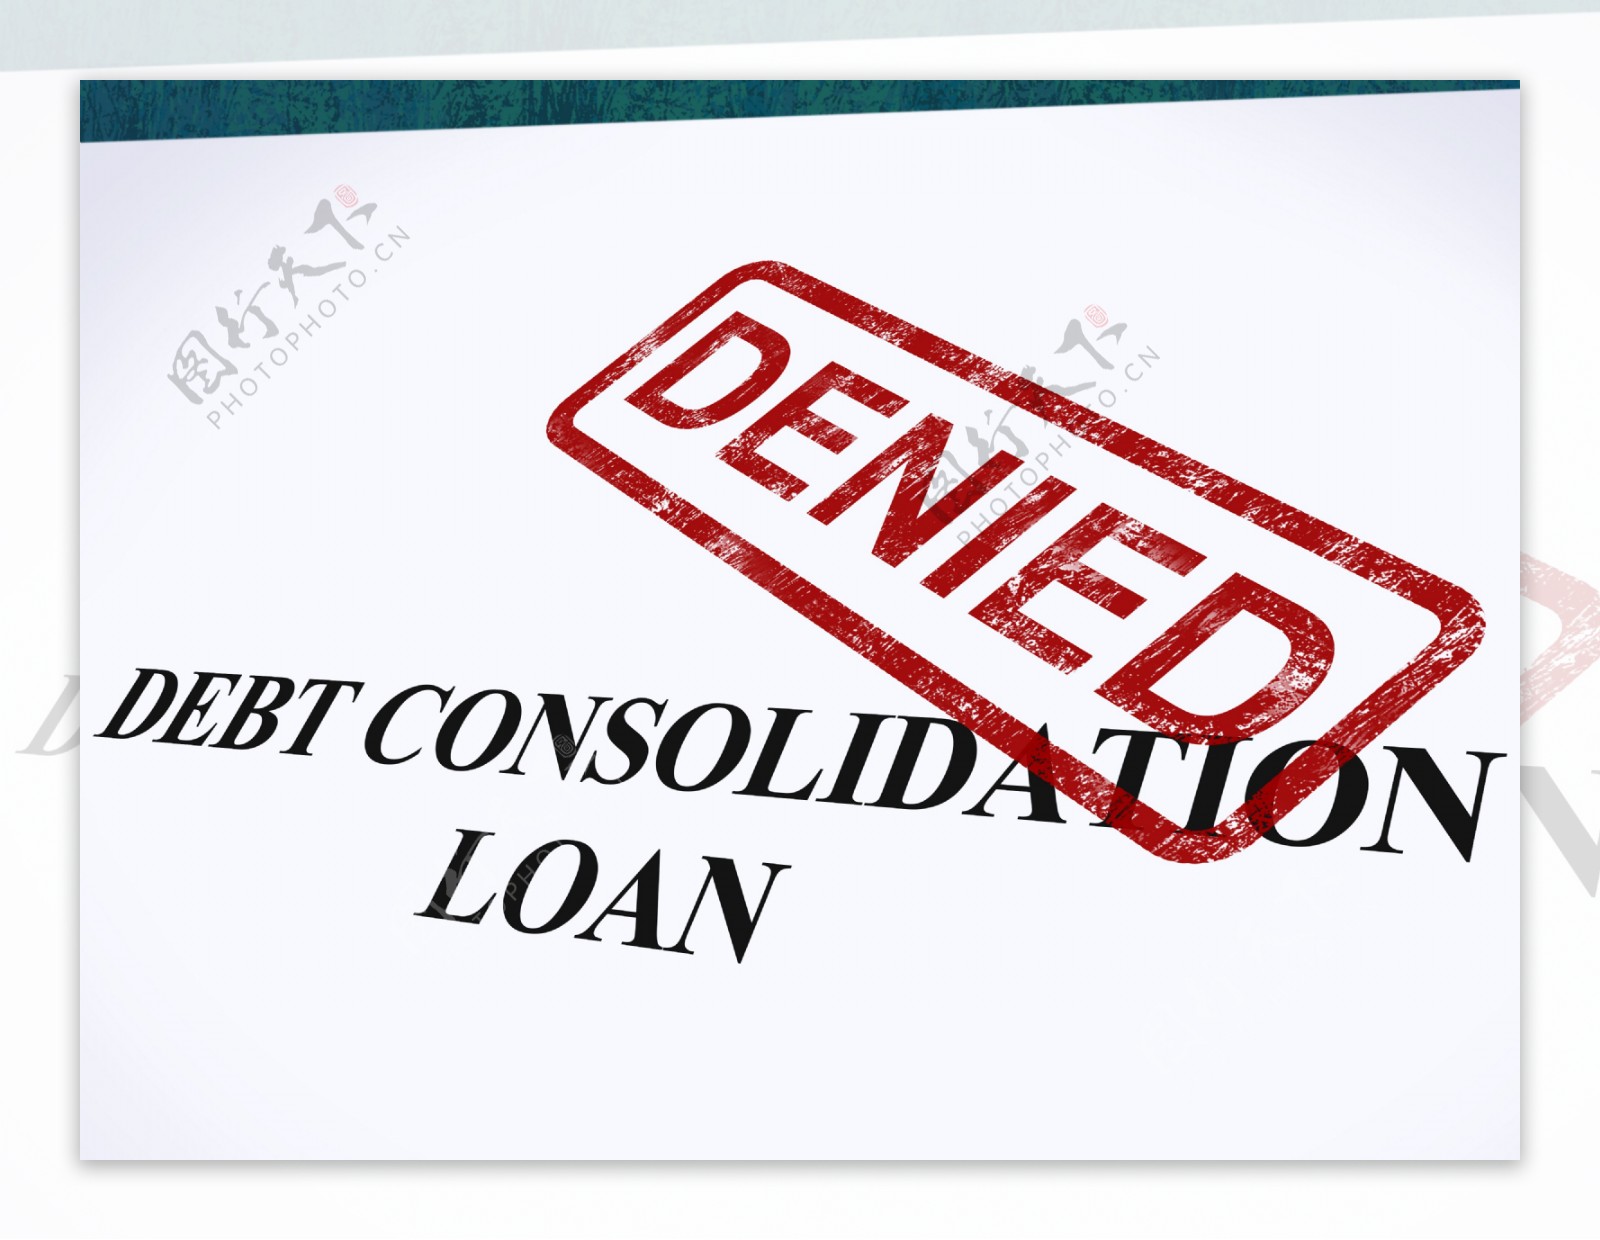 债务合并贷款债务合并贷款拒绝否认邮票